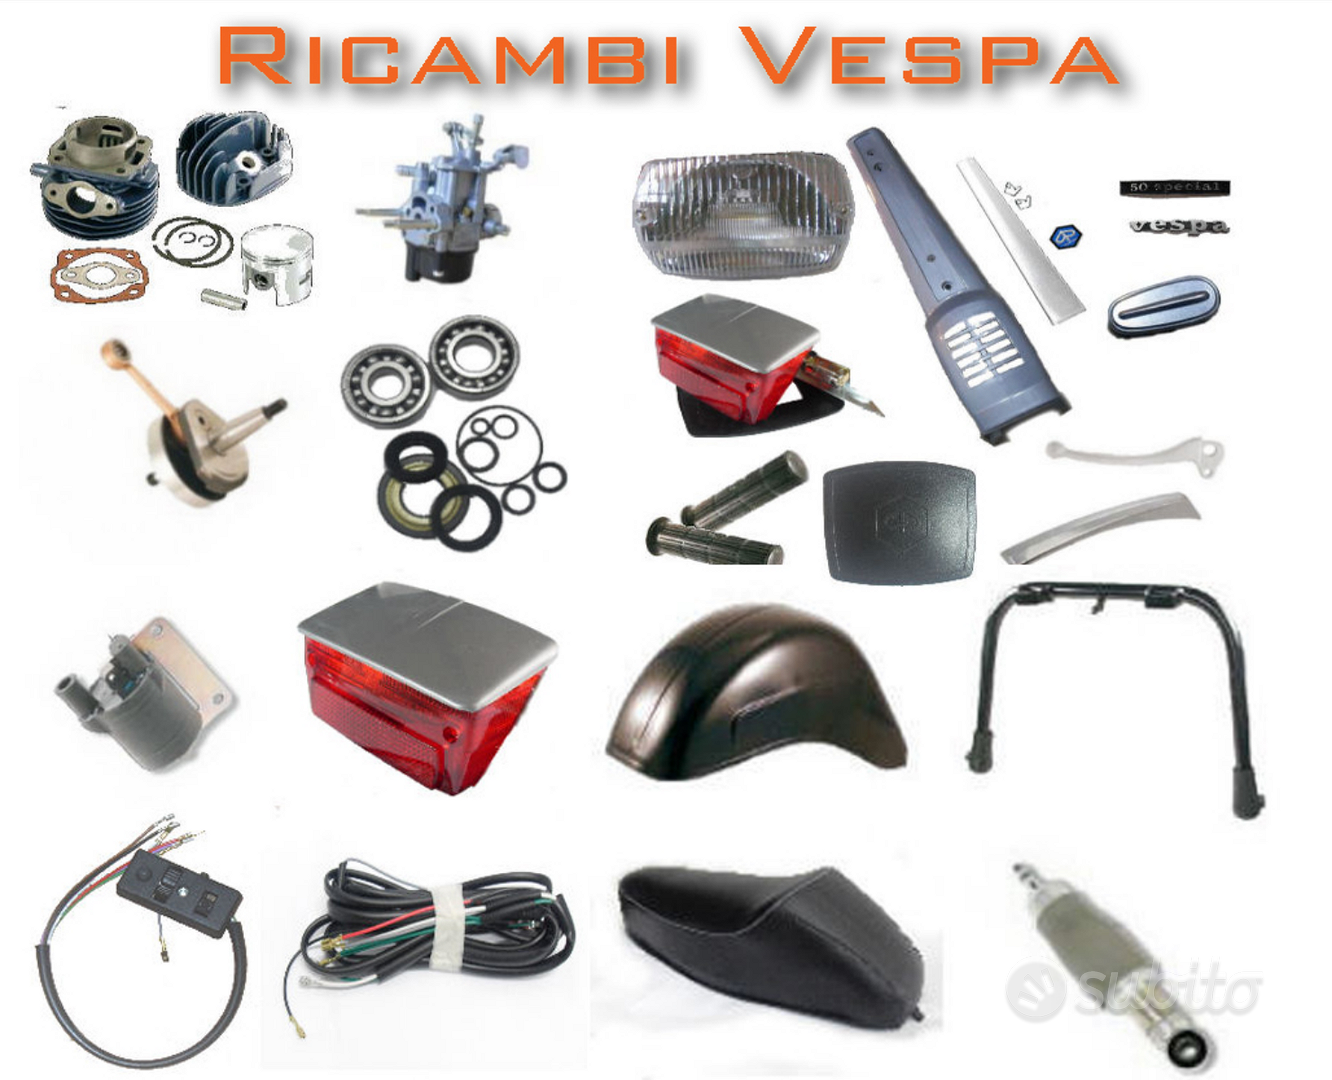 Ricambi vespa 50 special - Accessori Moto In vendita a Torino